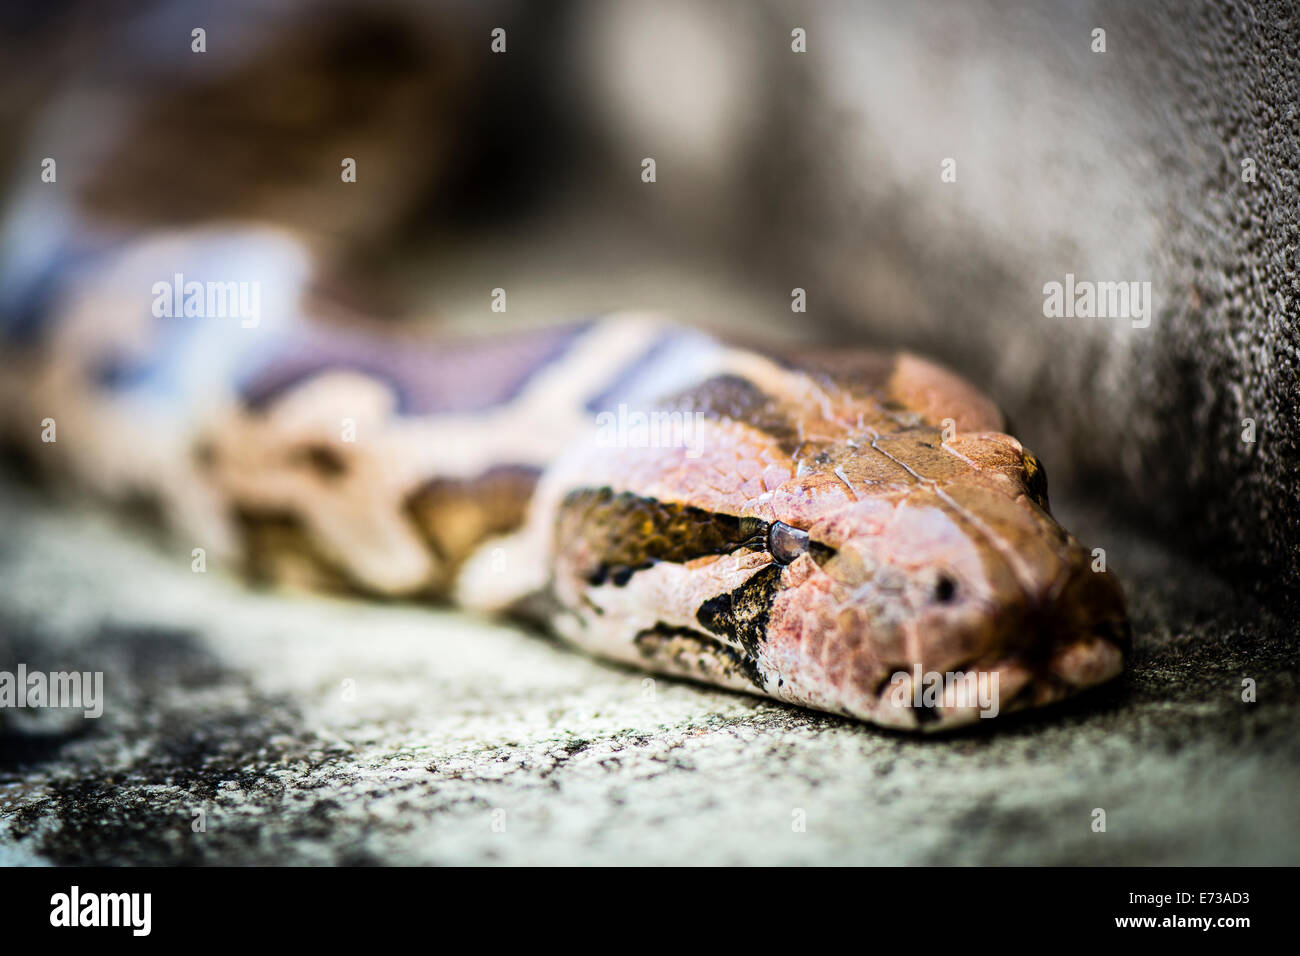 Python Reticulatus, gehört zu den längsten Schlangenarten und erhaltene Reptilien der Welt. Fotografiert mit Nikon-D800E. Stockfoto